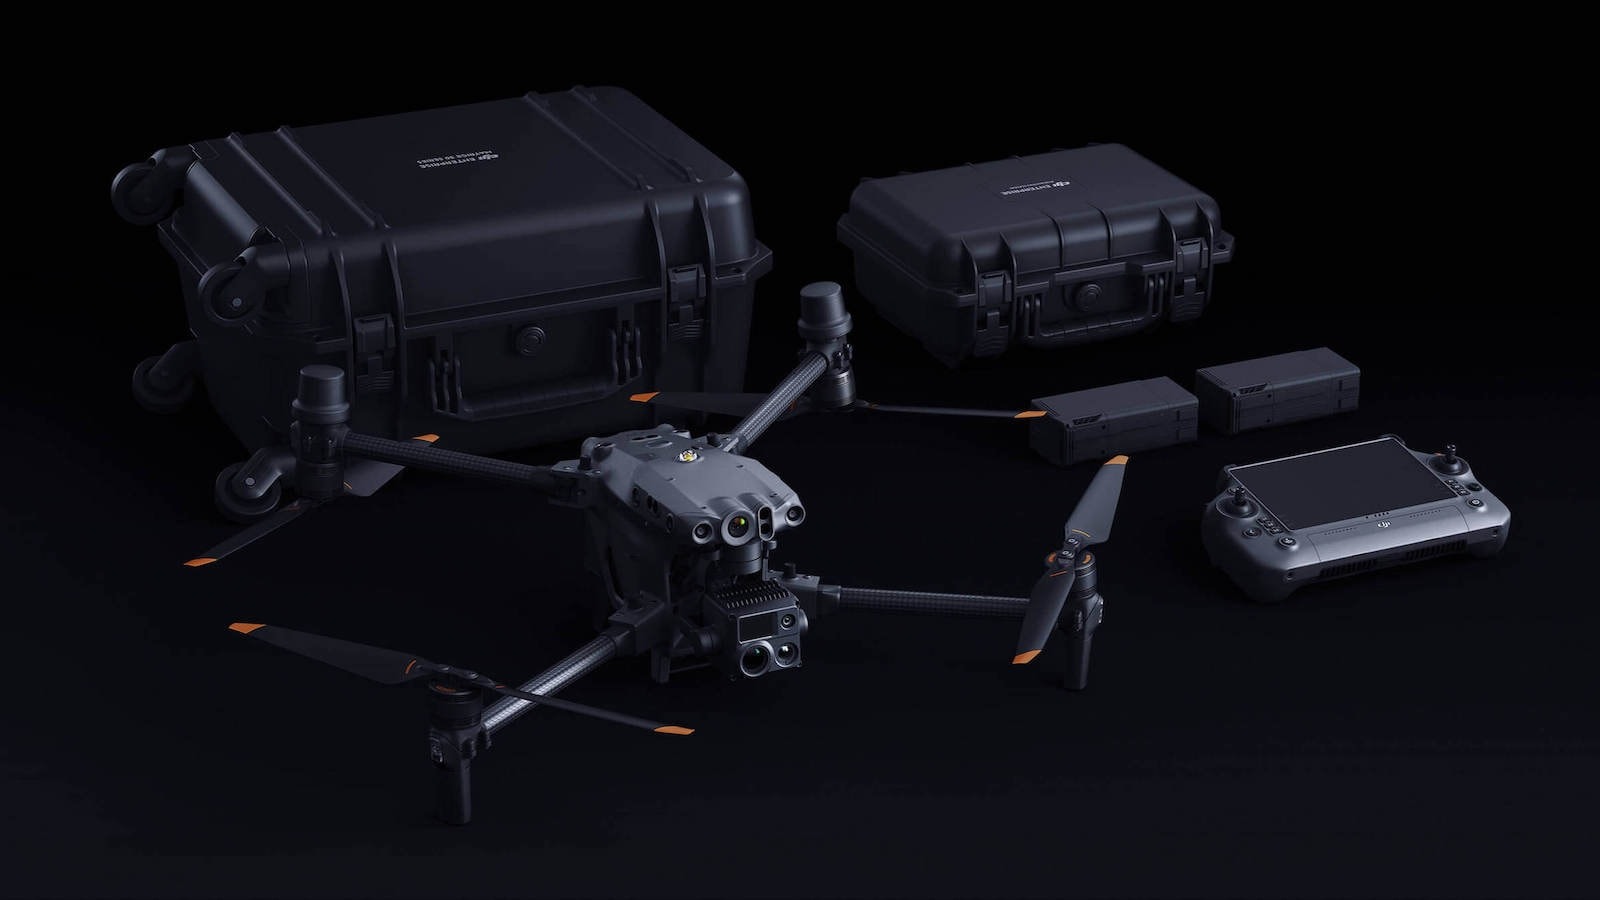 Les drones DJI de la série M30 offrent des performances de niveau supérieur, un zoom maximal de 200x, une taille compacte et plus encore